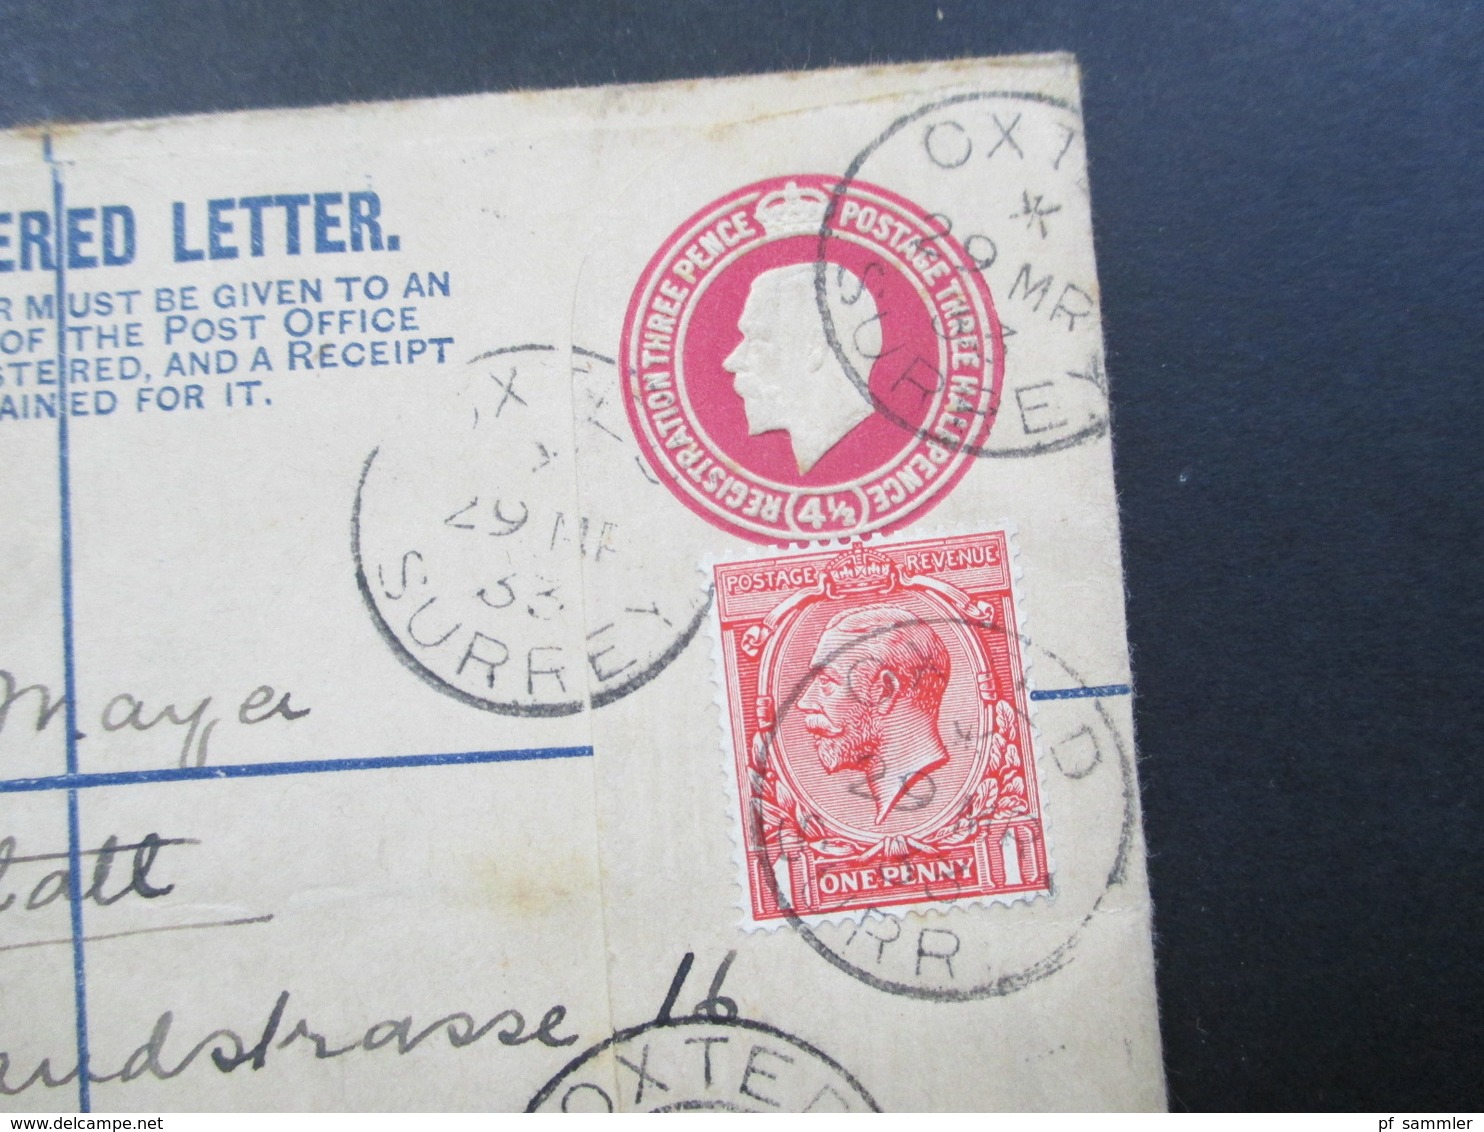 GB 1933 Registered Letter Oxted Surrey Nach Canstatt Württemberg Fee Paid. 2 Einschreiben Mit Zusatzfrankatur - Covers & Documents